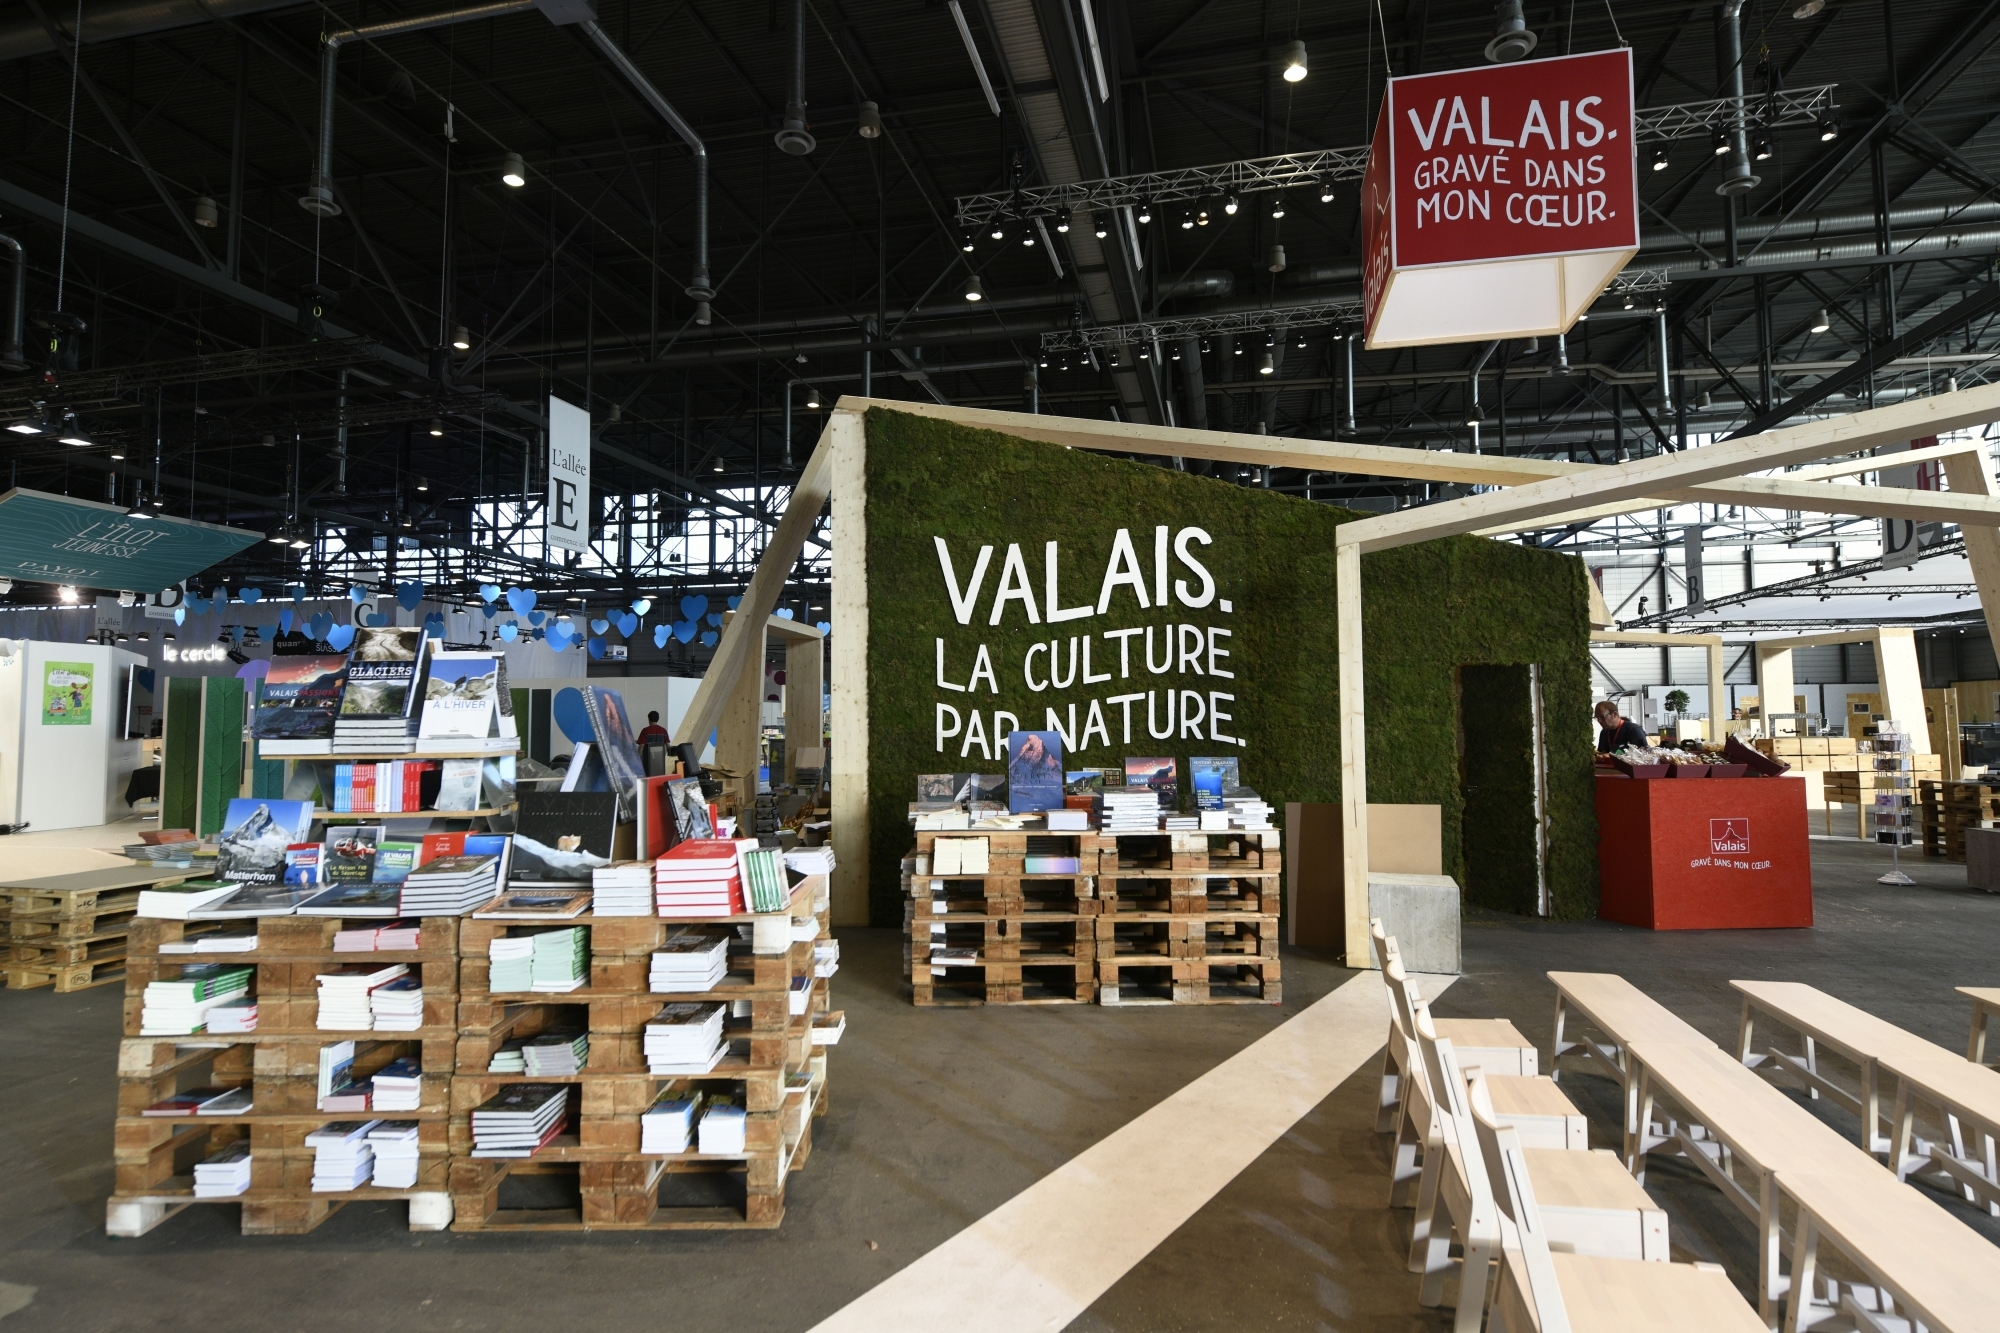 Le monde littéraire valaisan - ici exposé au Salon du livre de Genève en 2018 - est très actif. Mais y a-t-il réellement une identité cantonale liée à l'écriture?